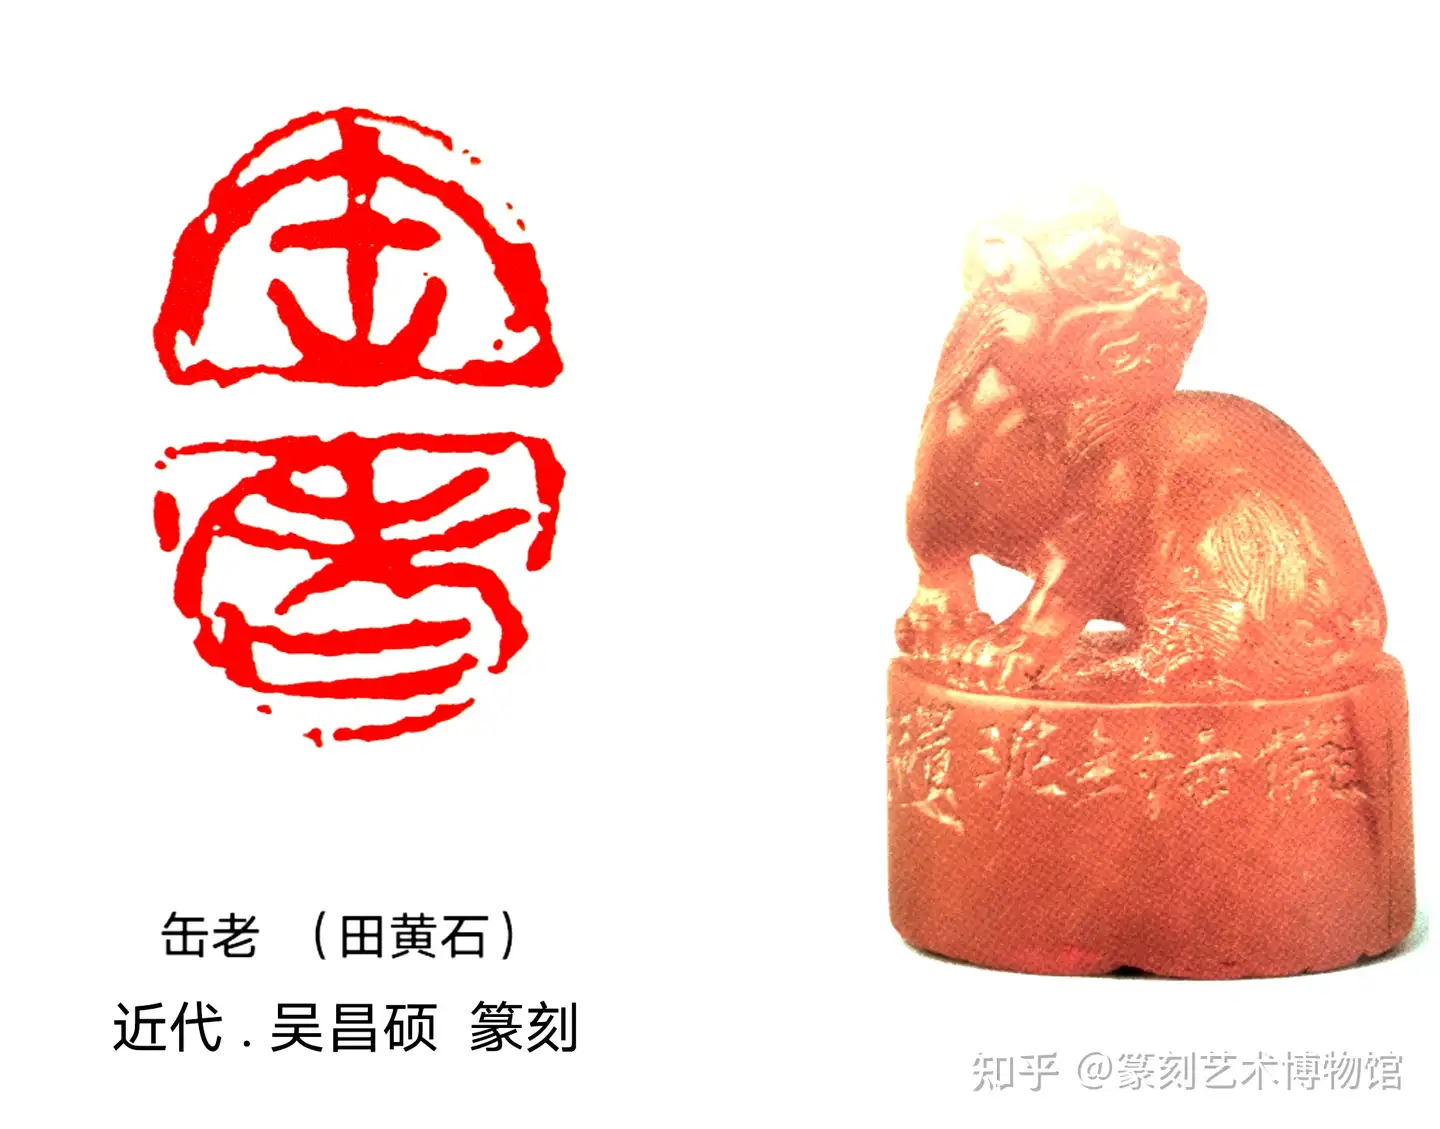 篆刻 高級石材 篆刻用 中国 篆刻石材 印材 新品 未使用 です。